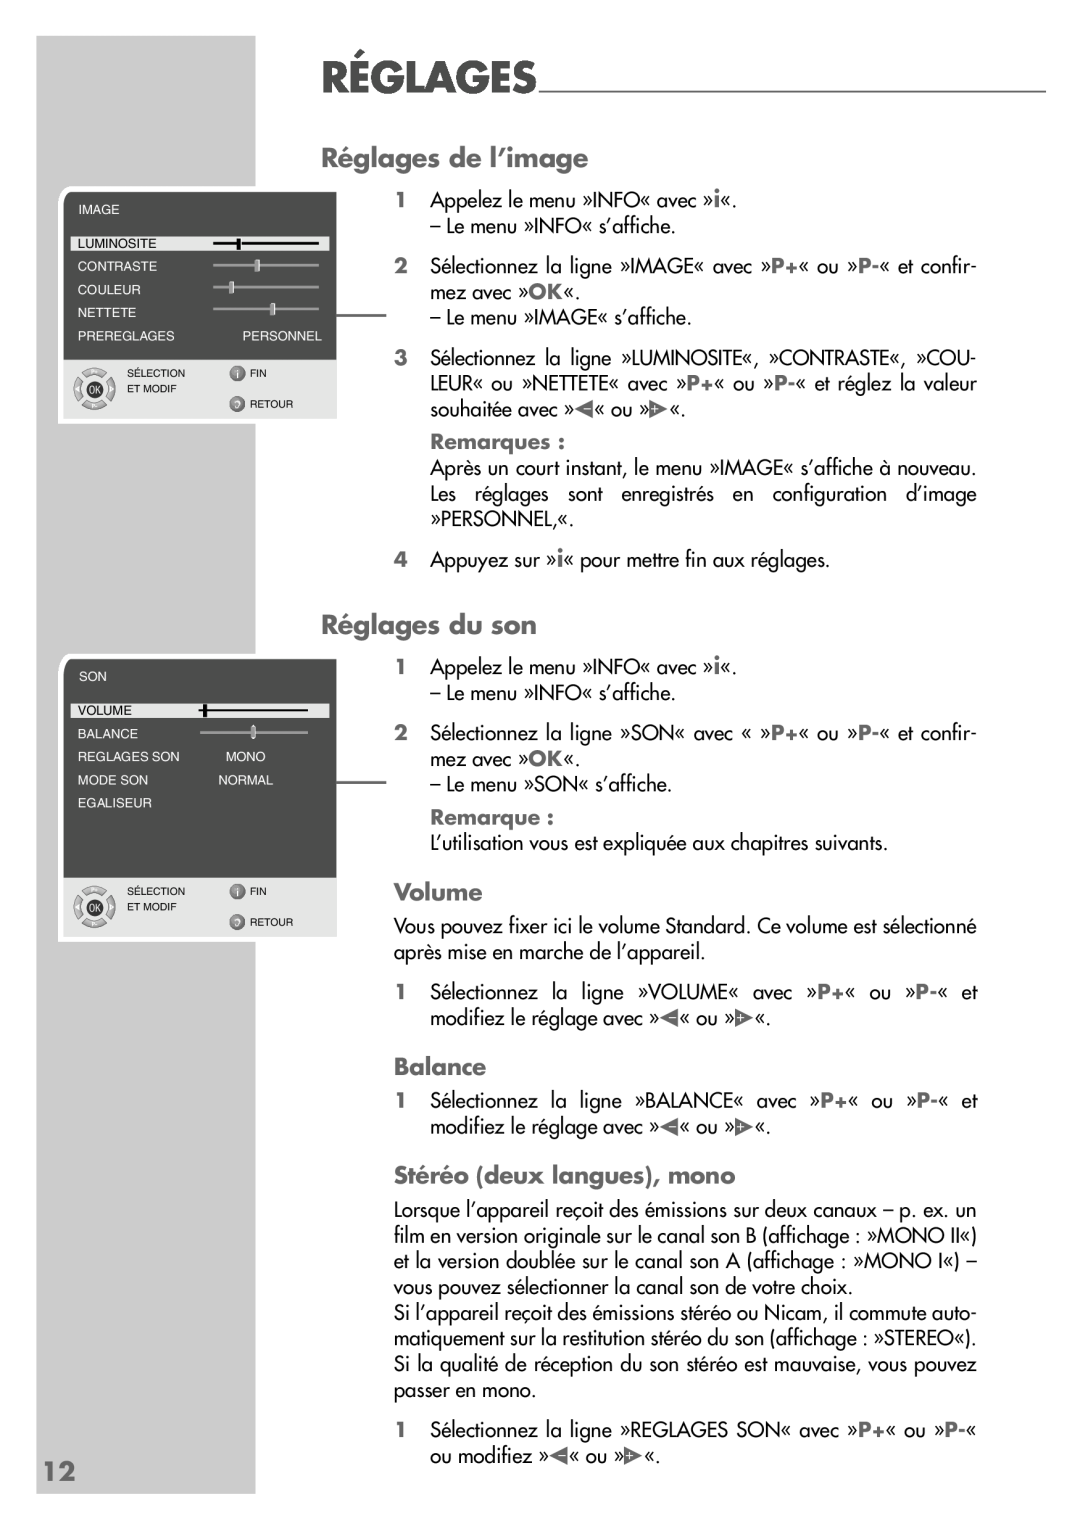 Grundig LW49-7710BS manual Réglages de l’image, Réglages du son, Volume, Balance, Stéréo deux langues, mono 